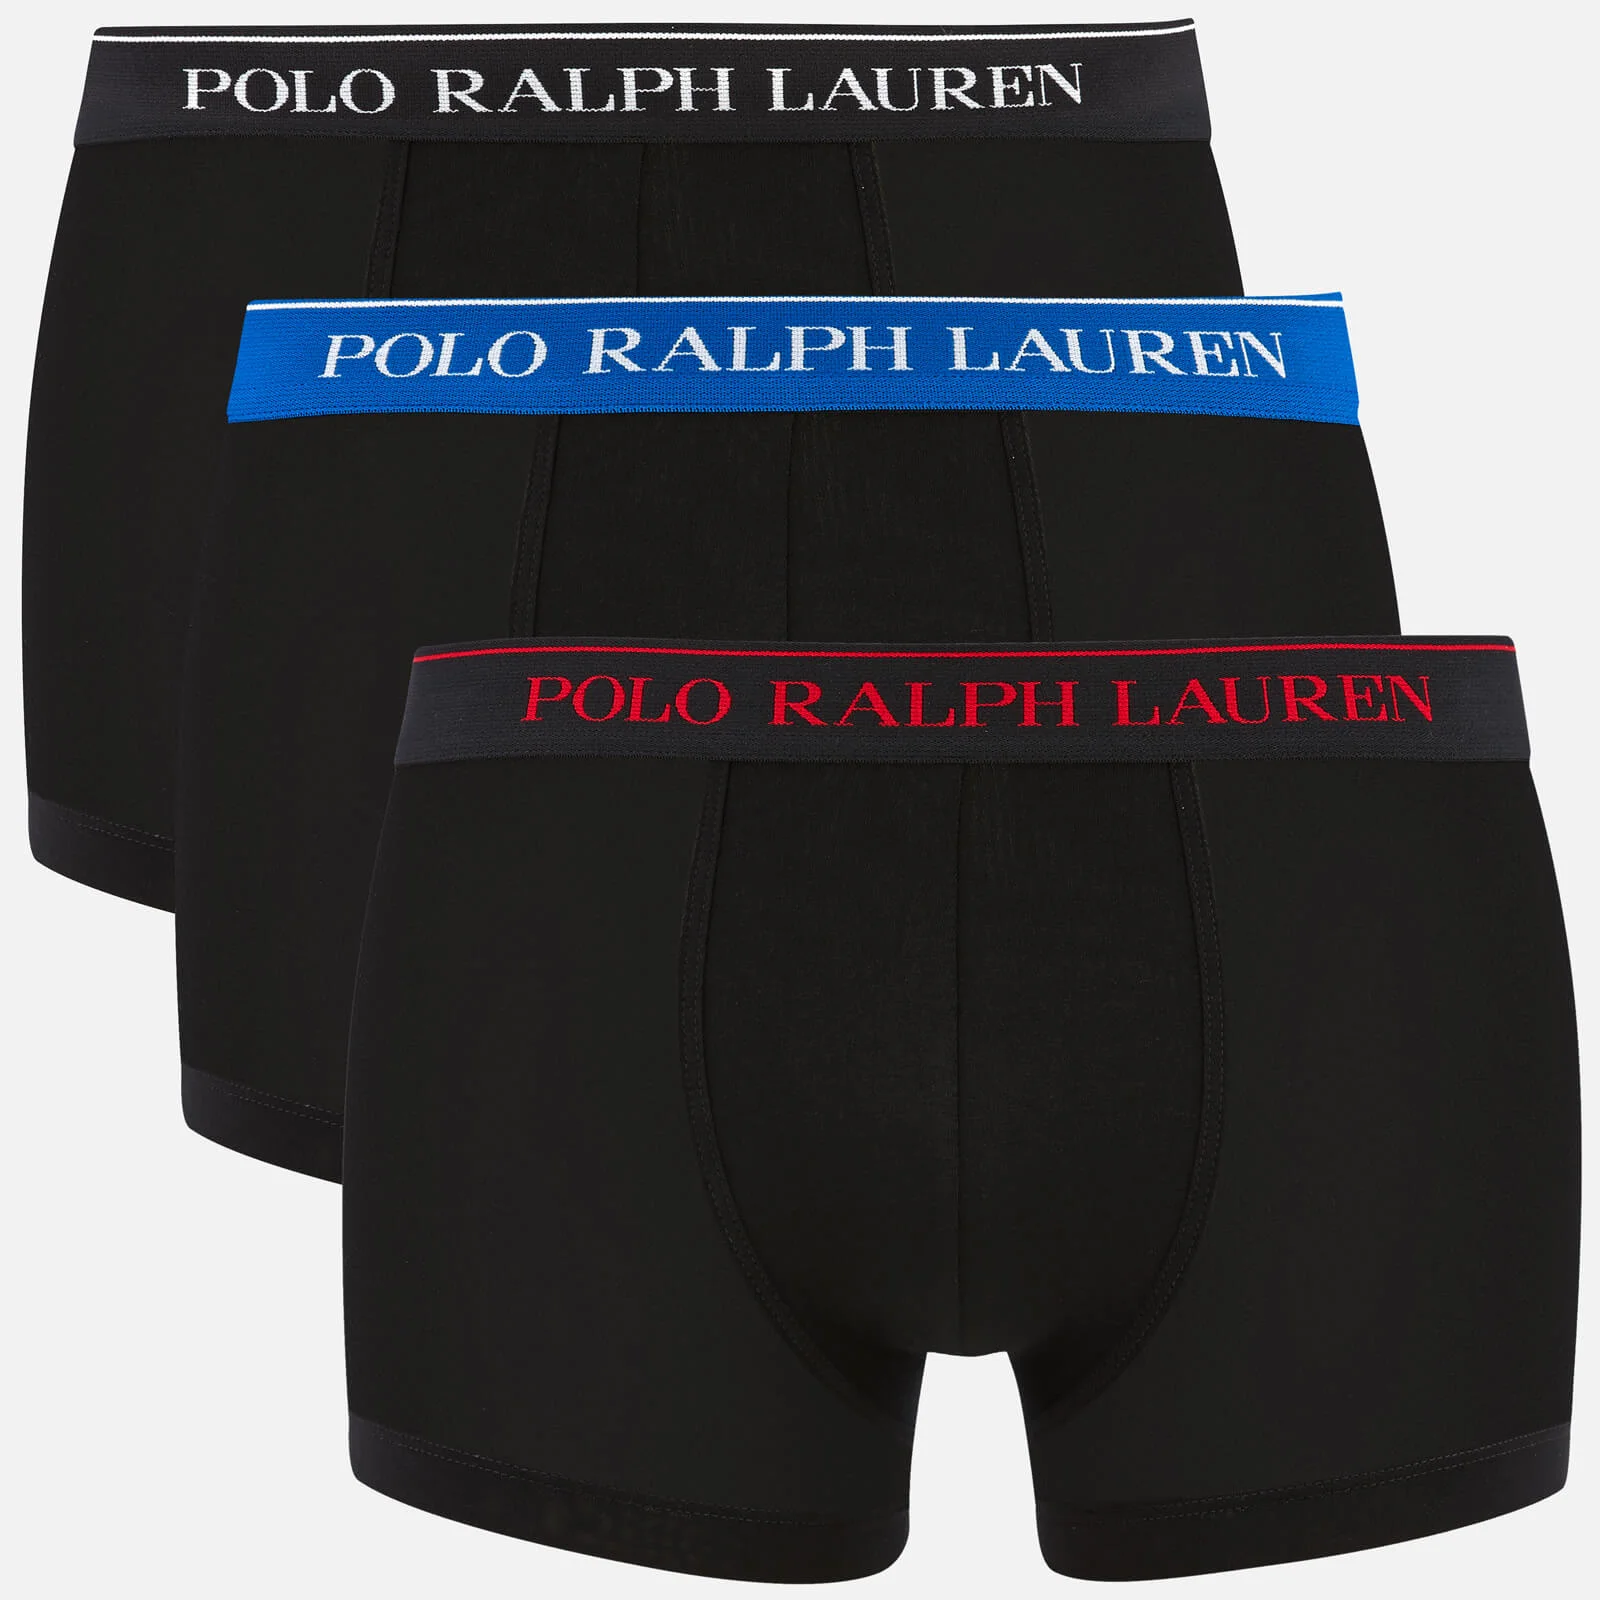 Polo Ralph Lauren Men's 3 Pack Classic Trunks - Polo Black Image 1